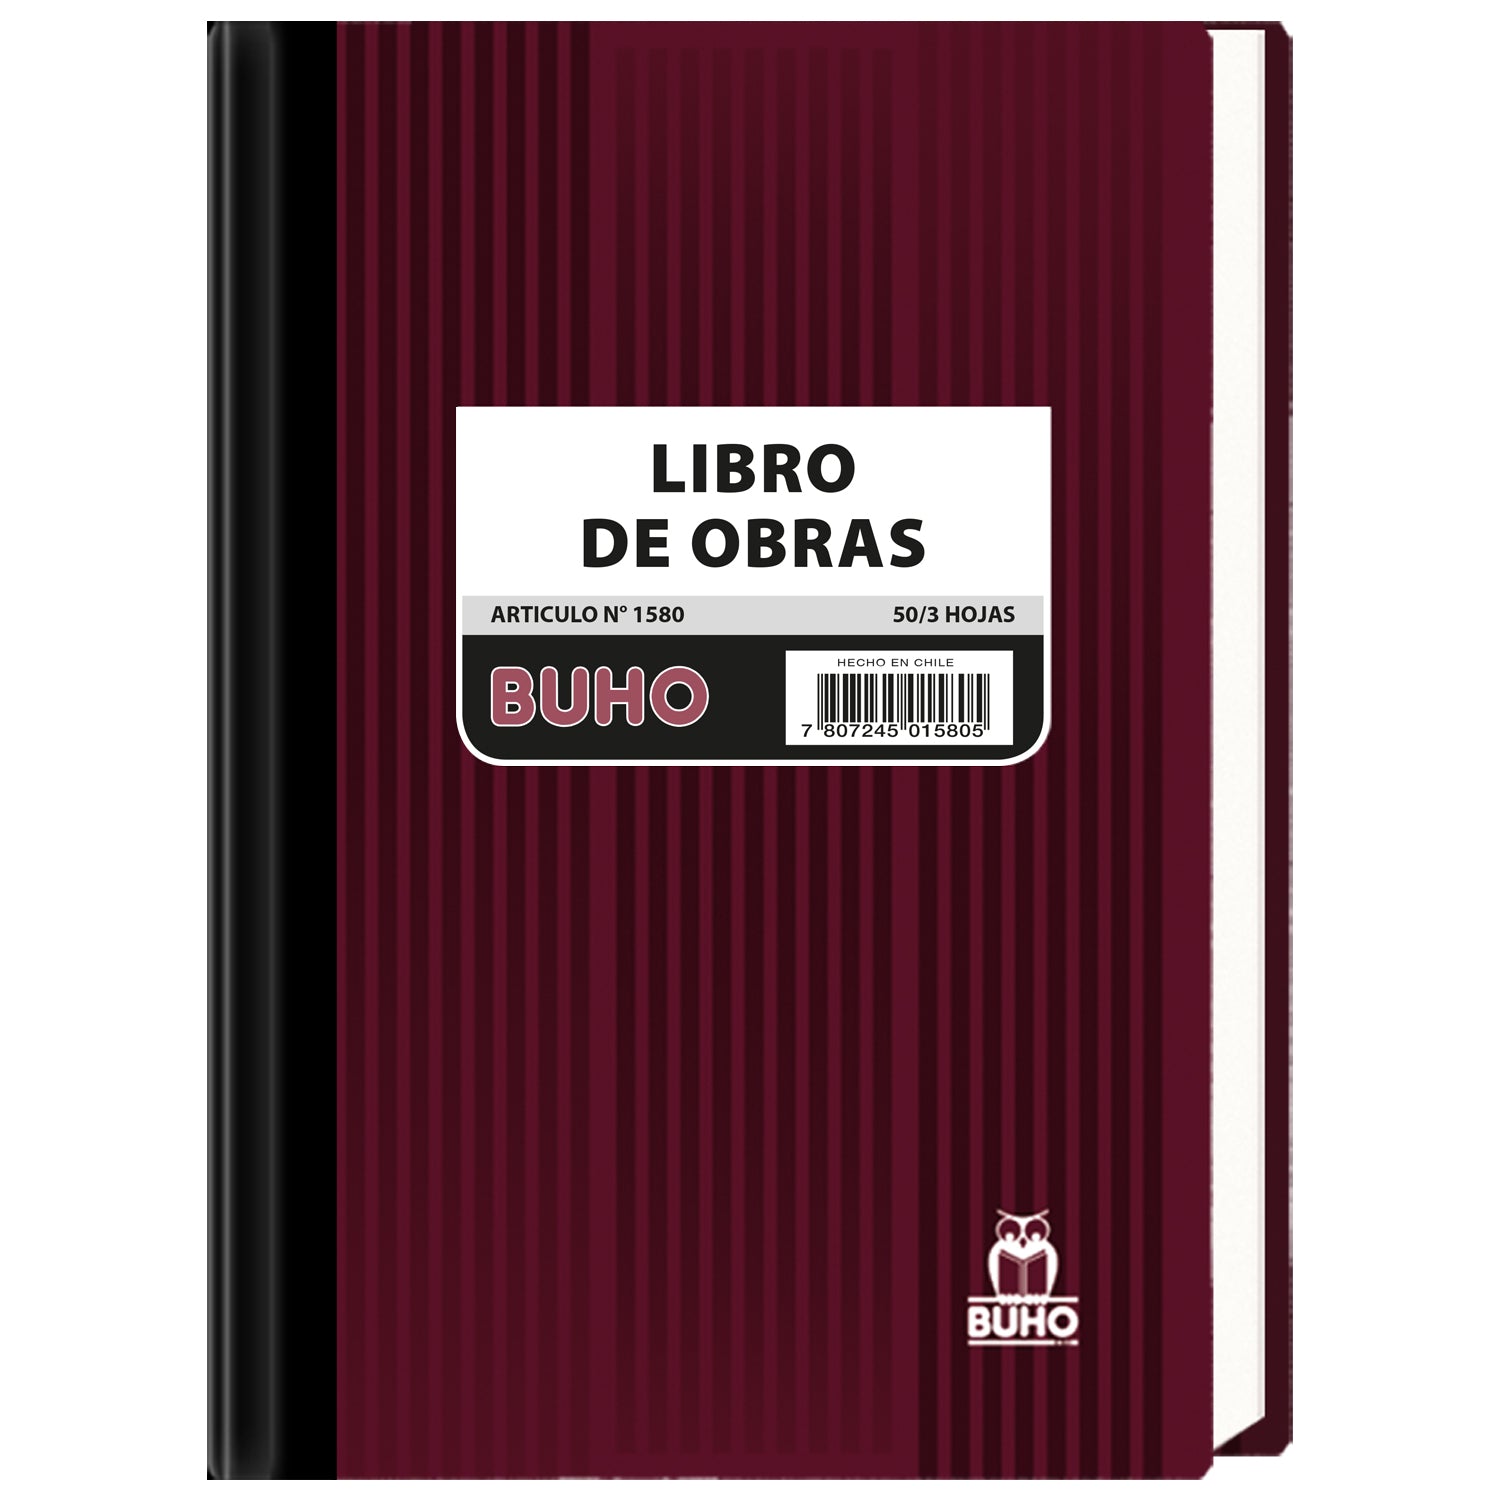 LIBRO DE OBRAS TRIPLICADO AUTOCOP. 1580 BUHO